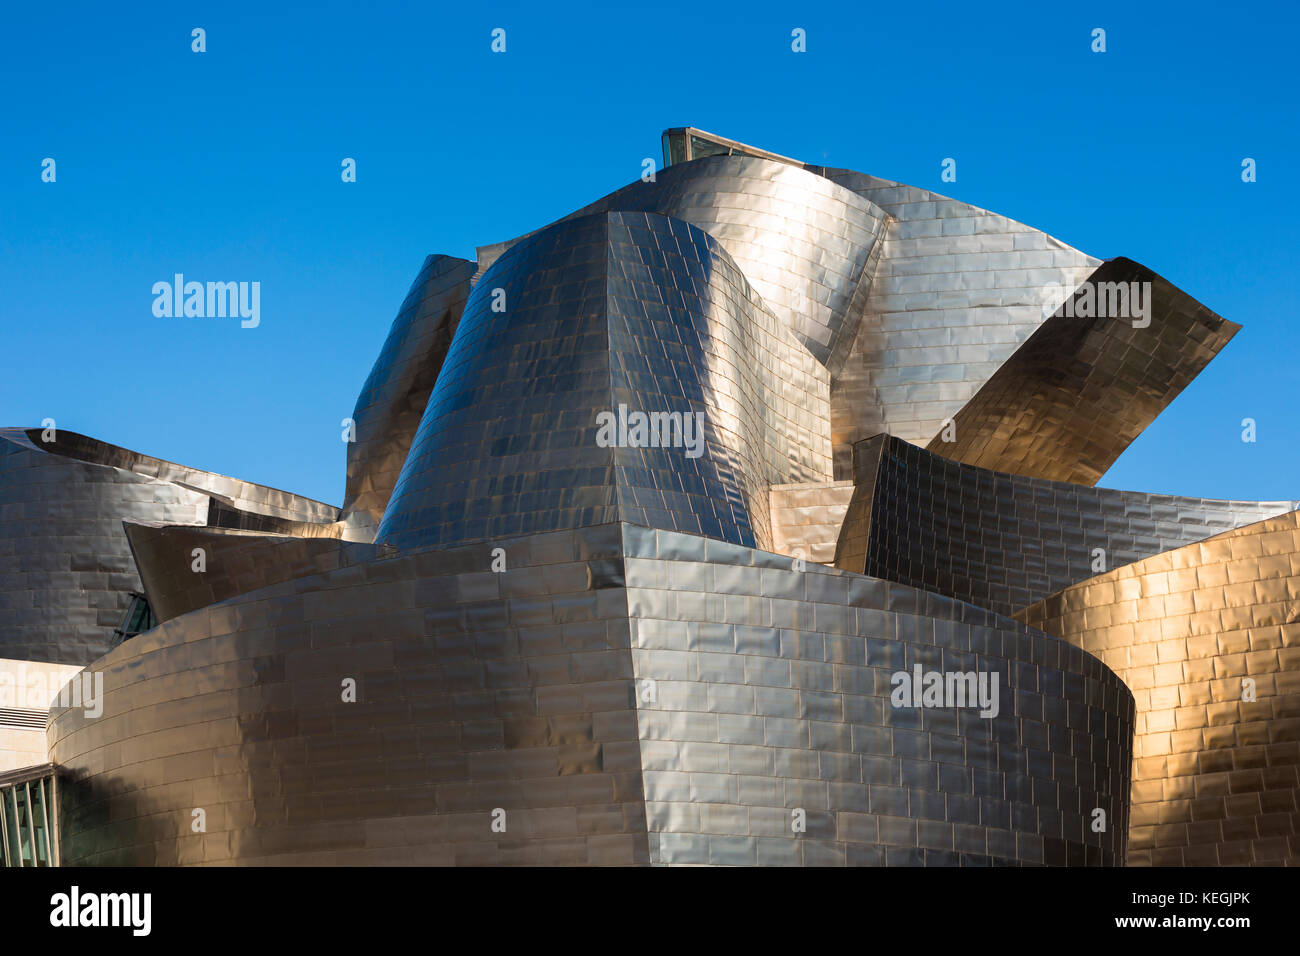 Musée Guggenheim de l'architecte Frank Gehry, un design architectural futuriste en titane à Bilbao, pays basque, Espagne Banque D'Images